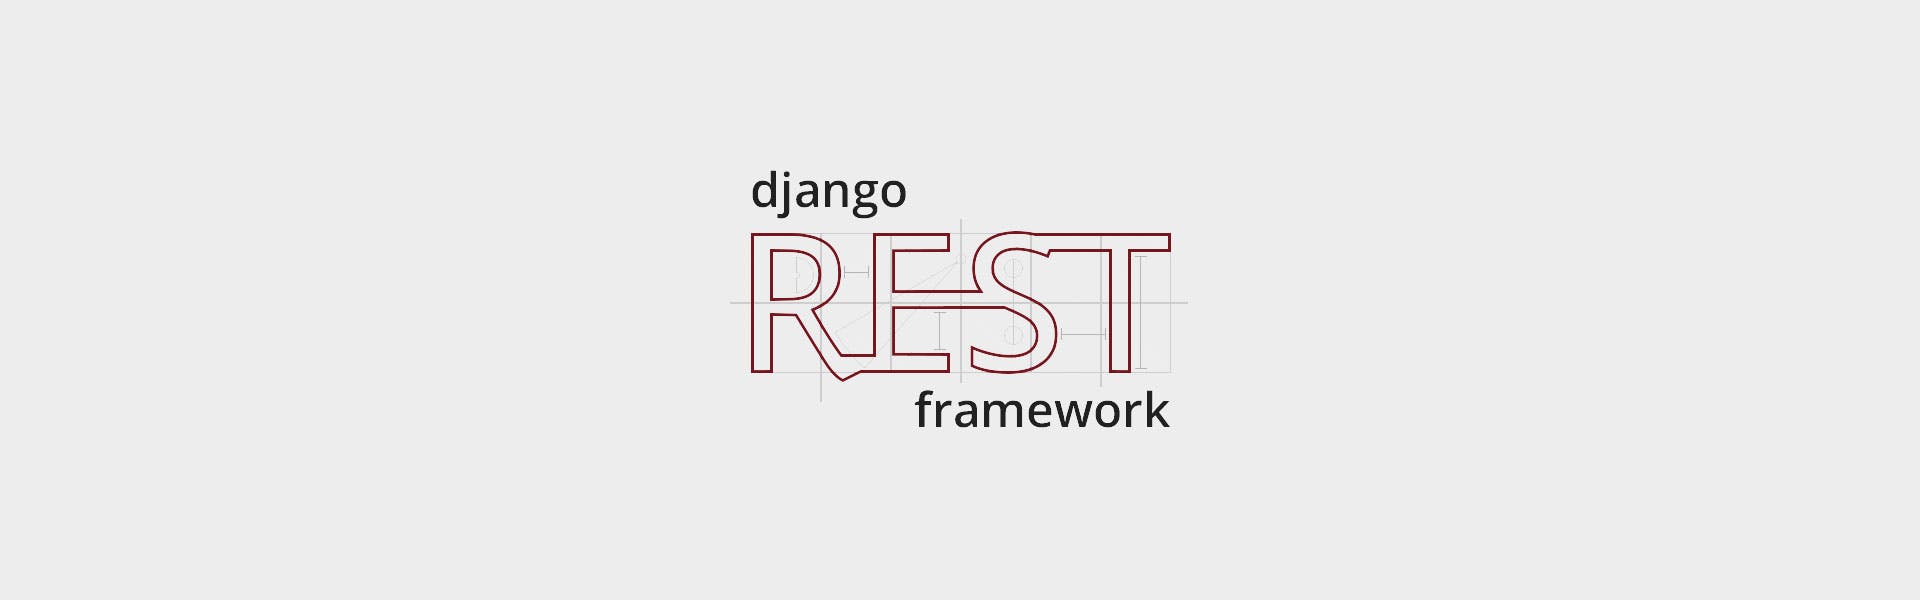 10 Razones para Elegir Django Rest Framework